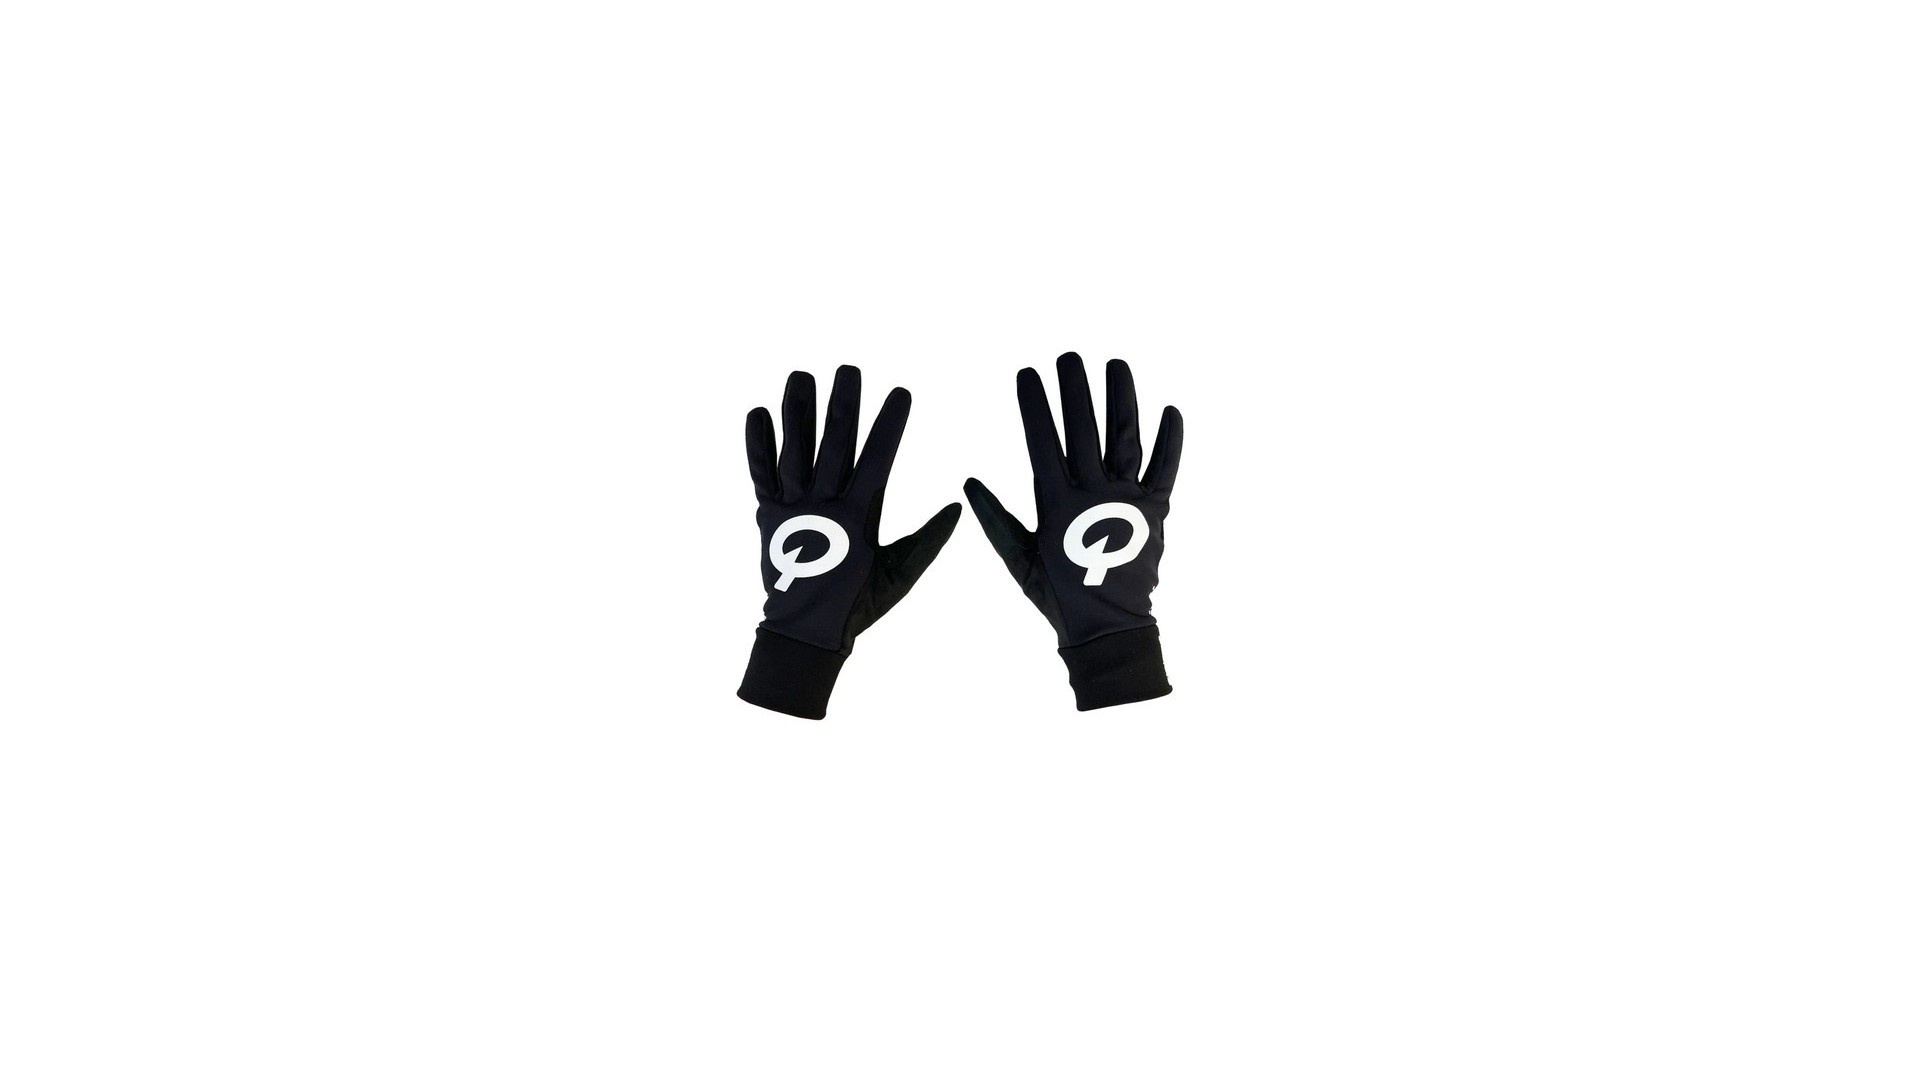 Rękawiczki PROLOGO KLYMA zimowe, długie palce, czarne z białym logo, roz. L - PR-GLOVELFBW11-L